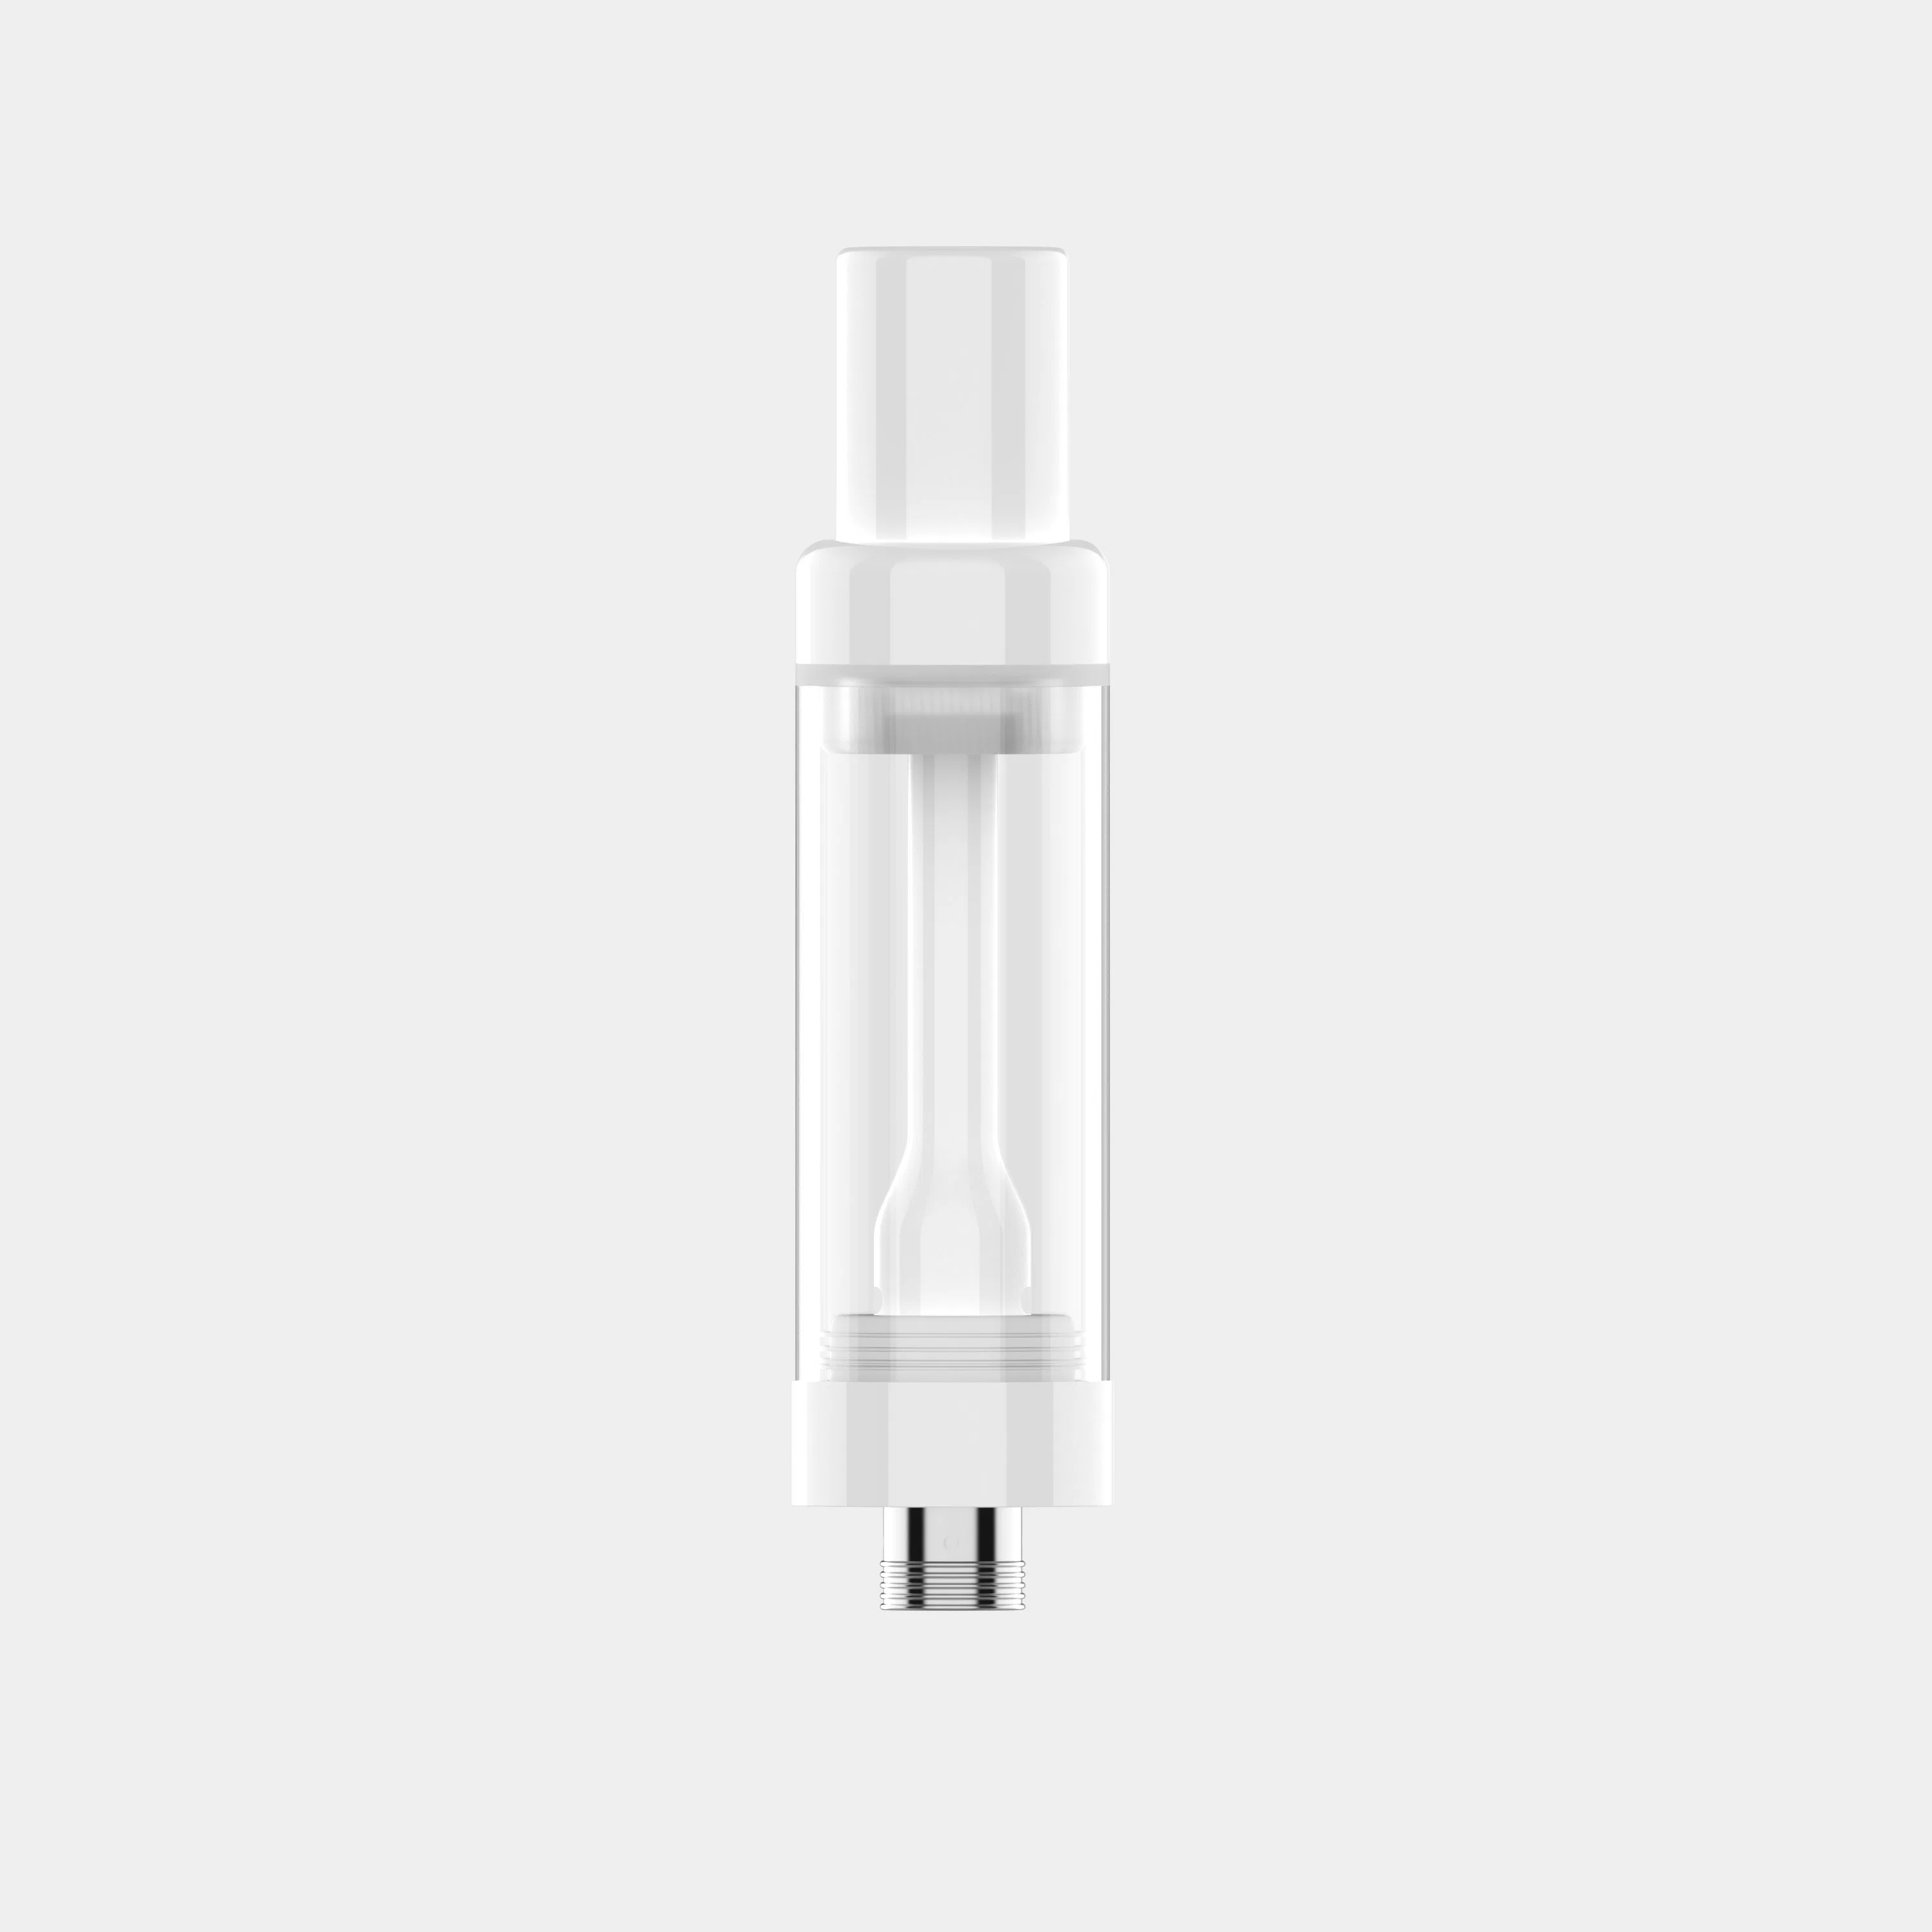 Commerce de gros e-cigarette vide jetables Vape Atomiseur pour filetage de la bobine en céramique Vape batterie 510